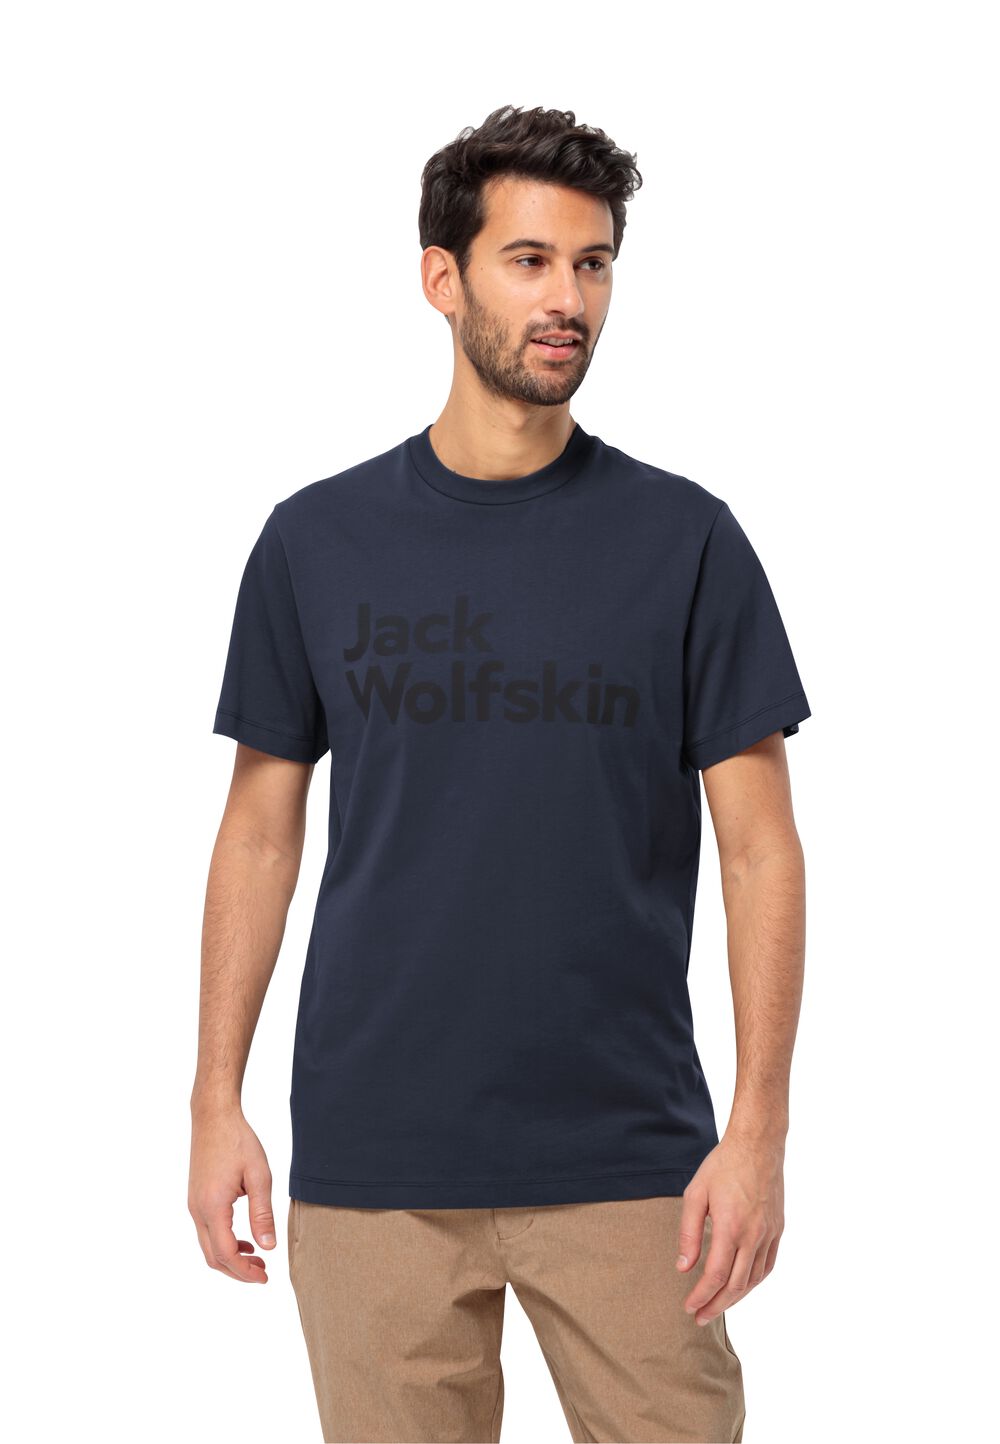 Jack Wolfskin T-Shirt aus Bio-Baumwolle Herren Essential Logo T-Shirt Men S blau night blue von Jack Wolfskin